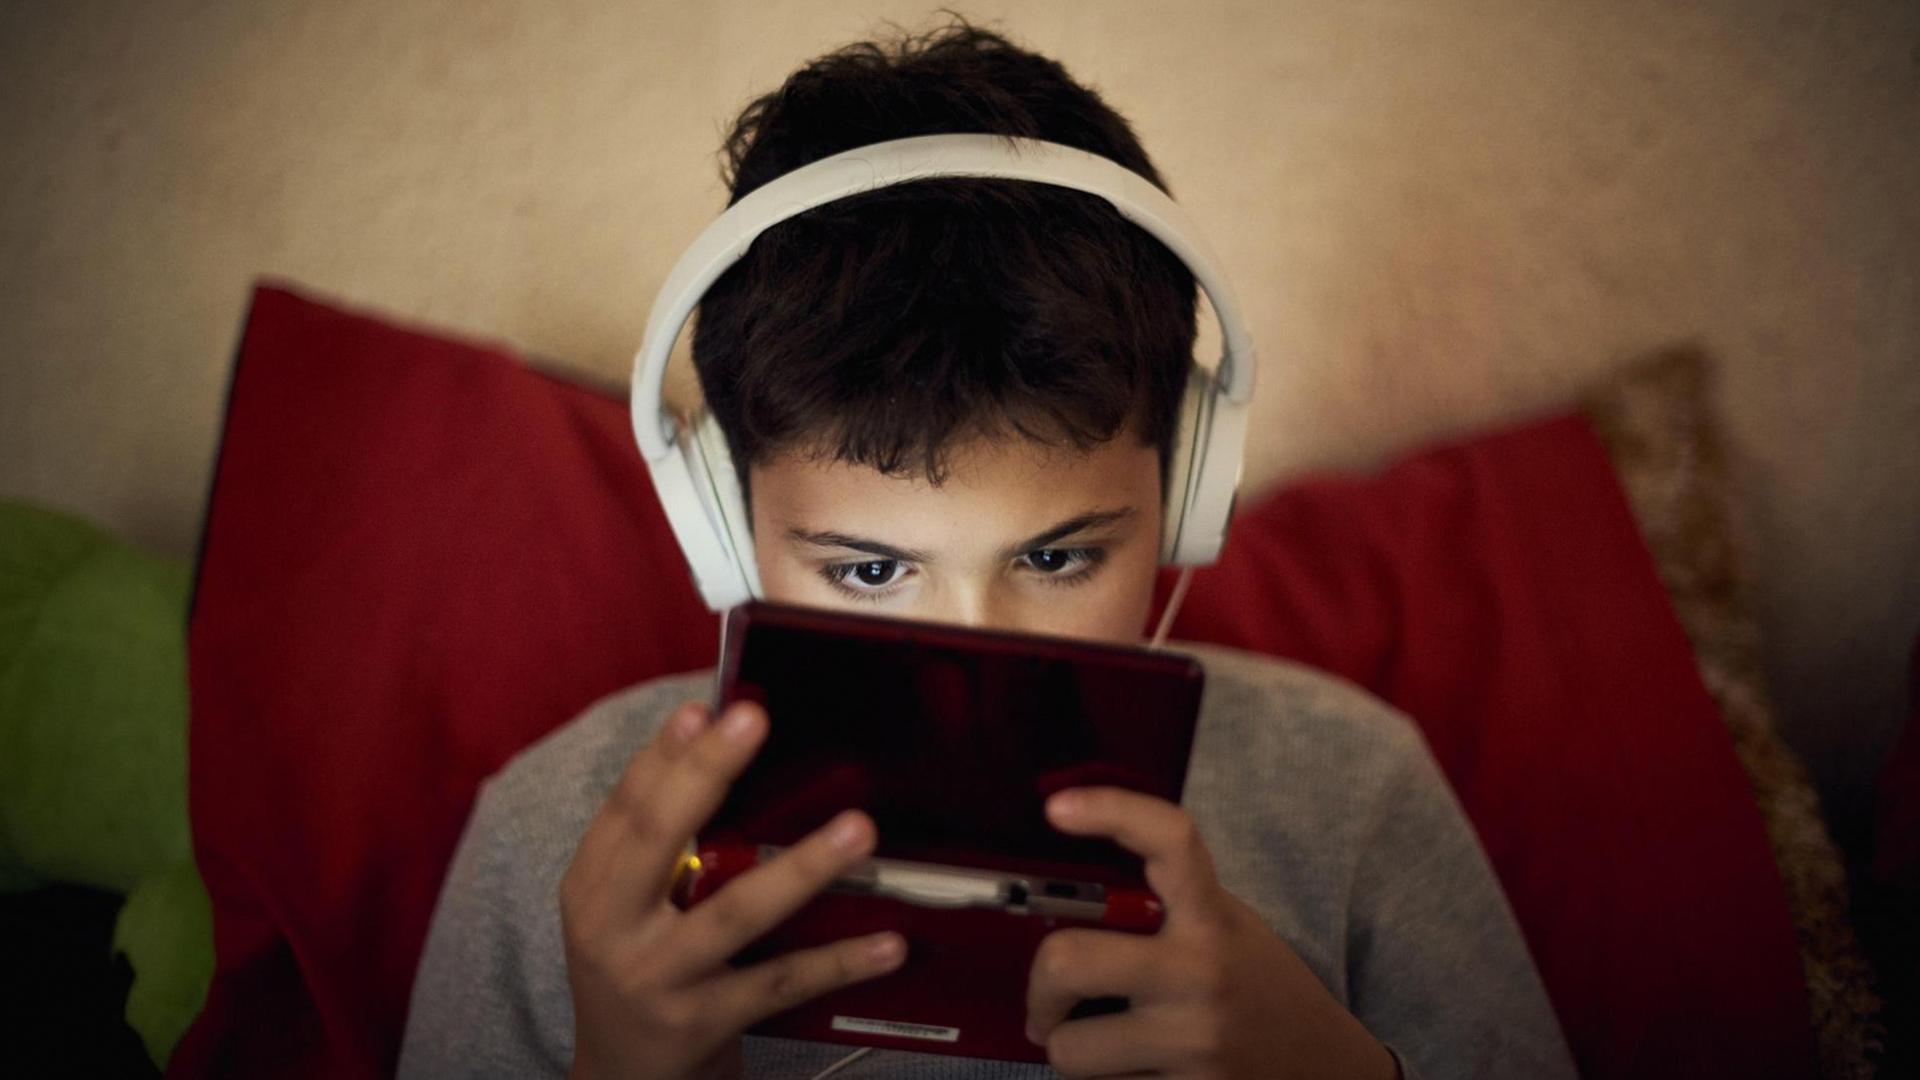 Symbolbild: Kind schaut in Handy, Kopfhörer auf den Ohren